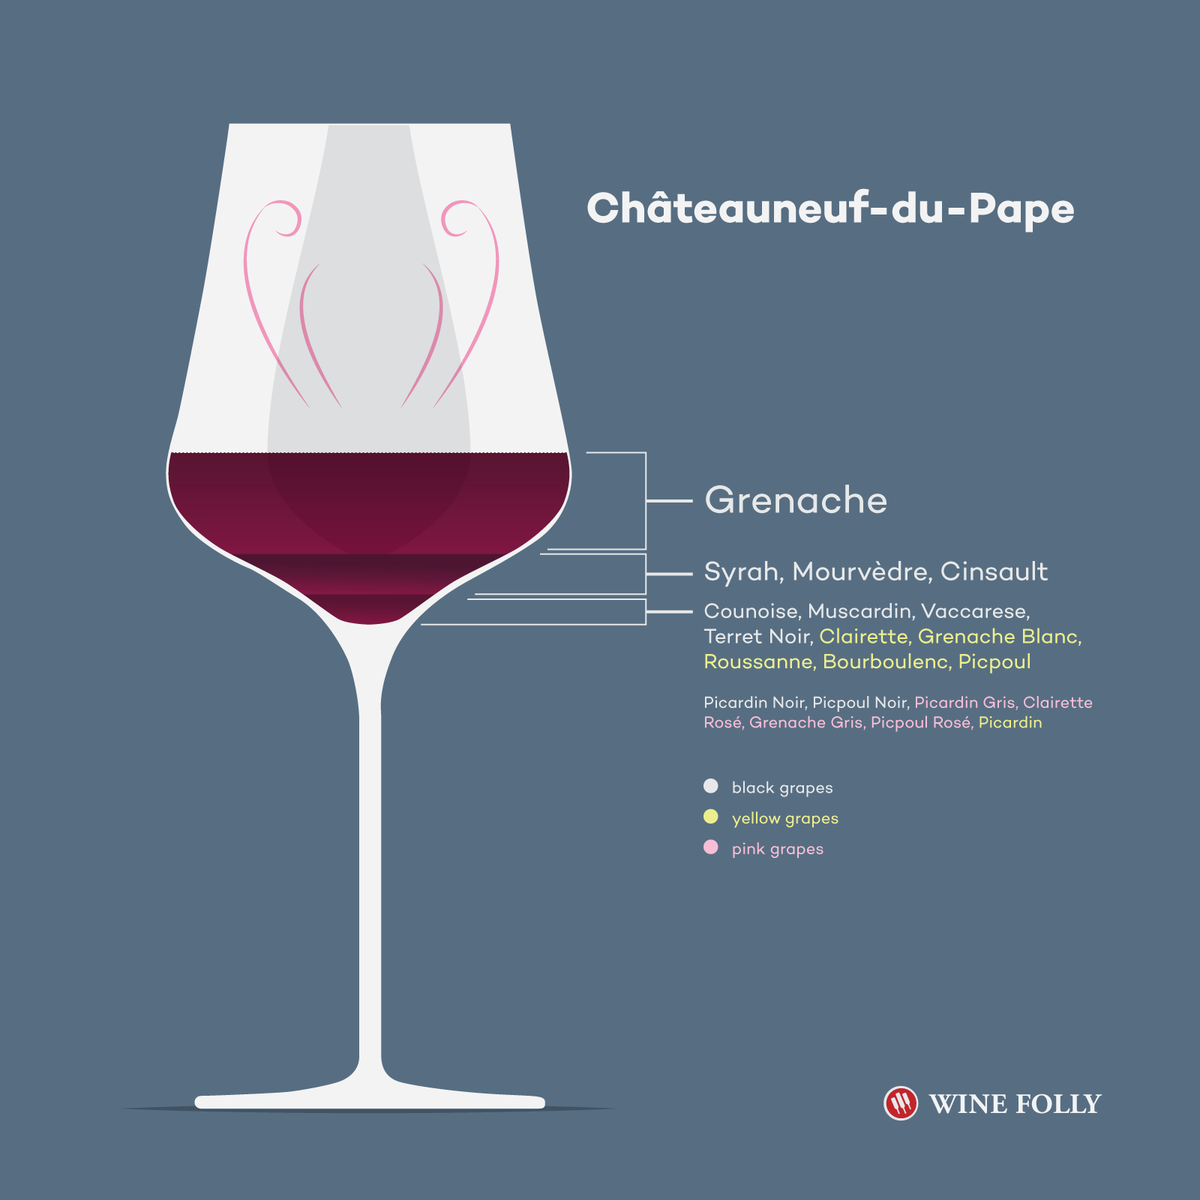 Chateauneuf-du-Pape Officiel Raisins - Il y en a 20 - Illustration en verre par Wine Folly